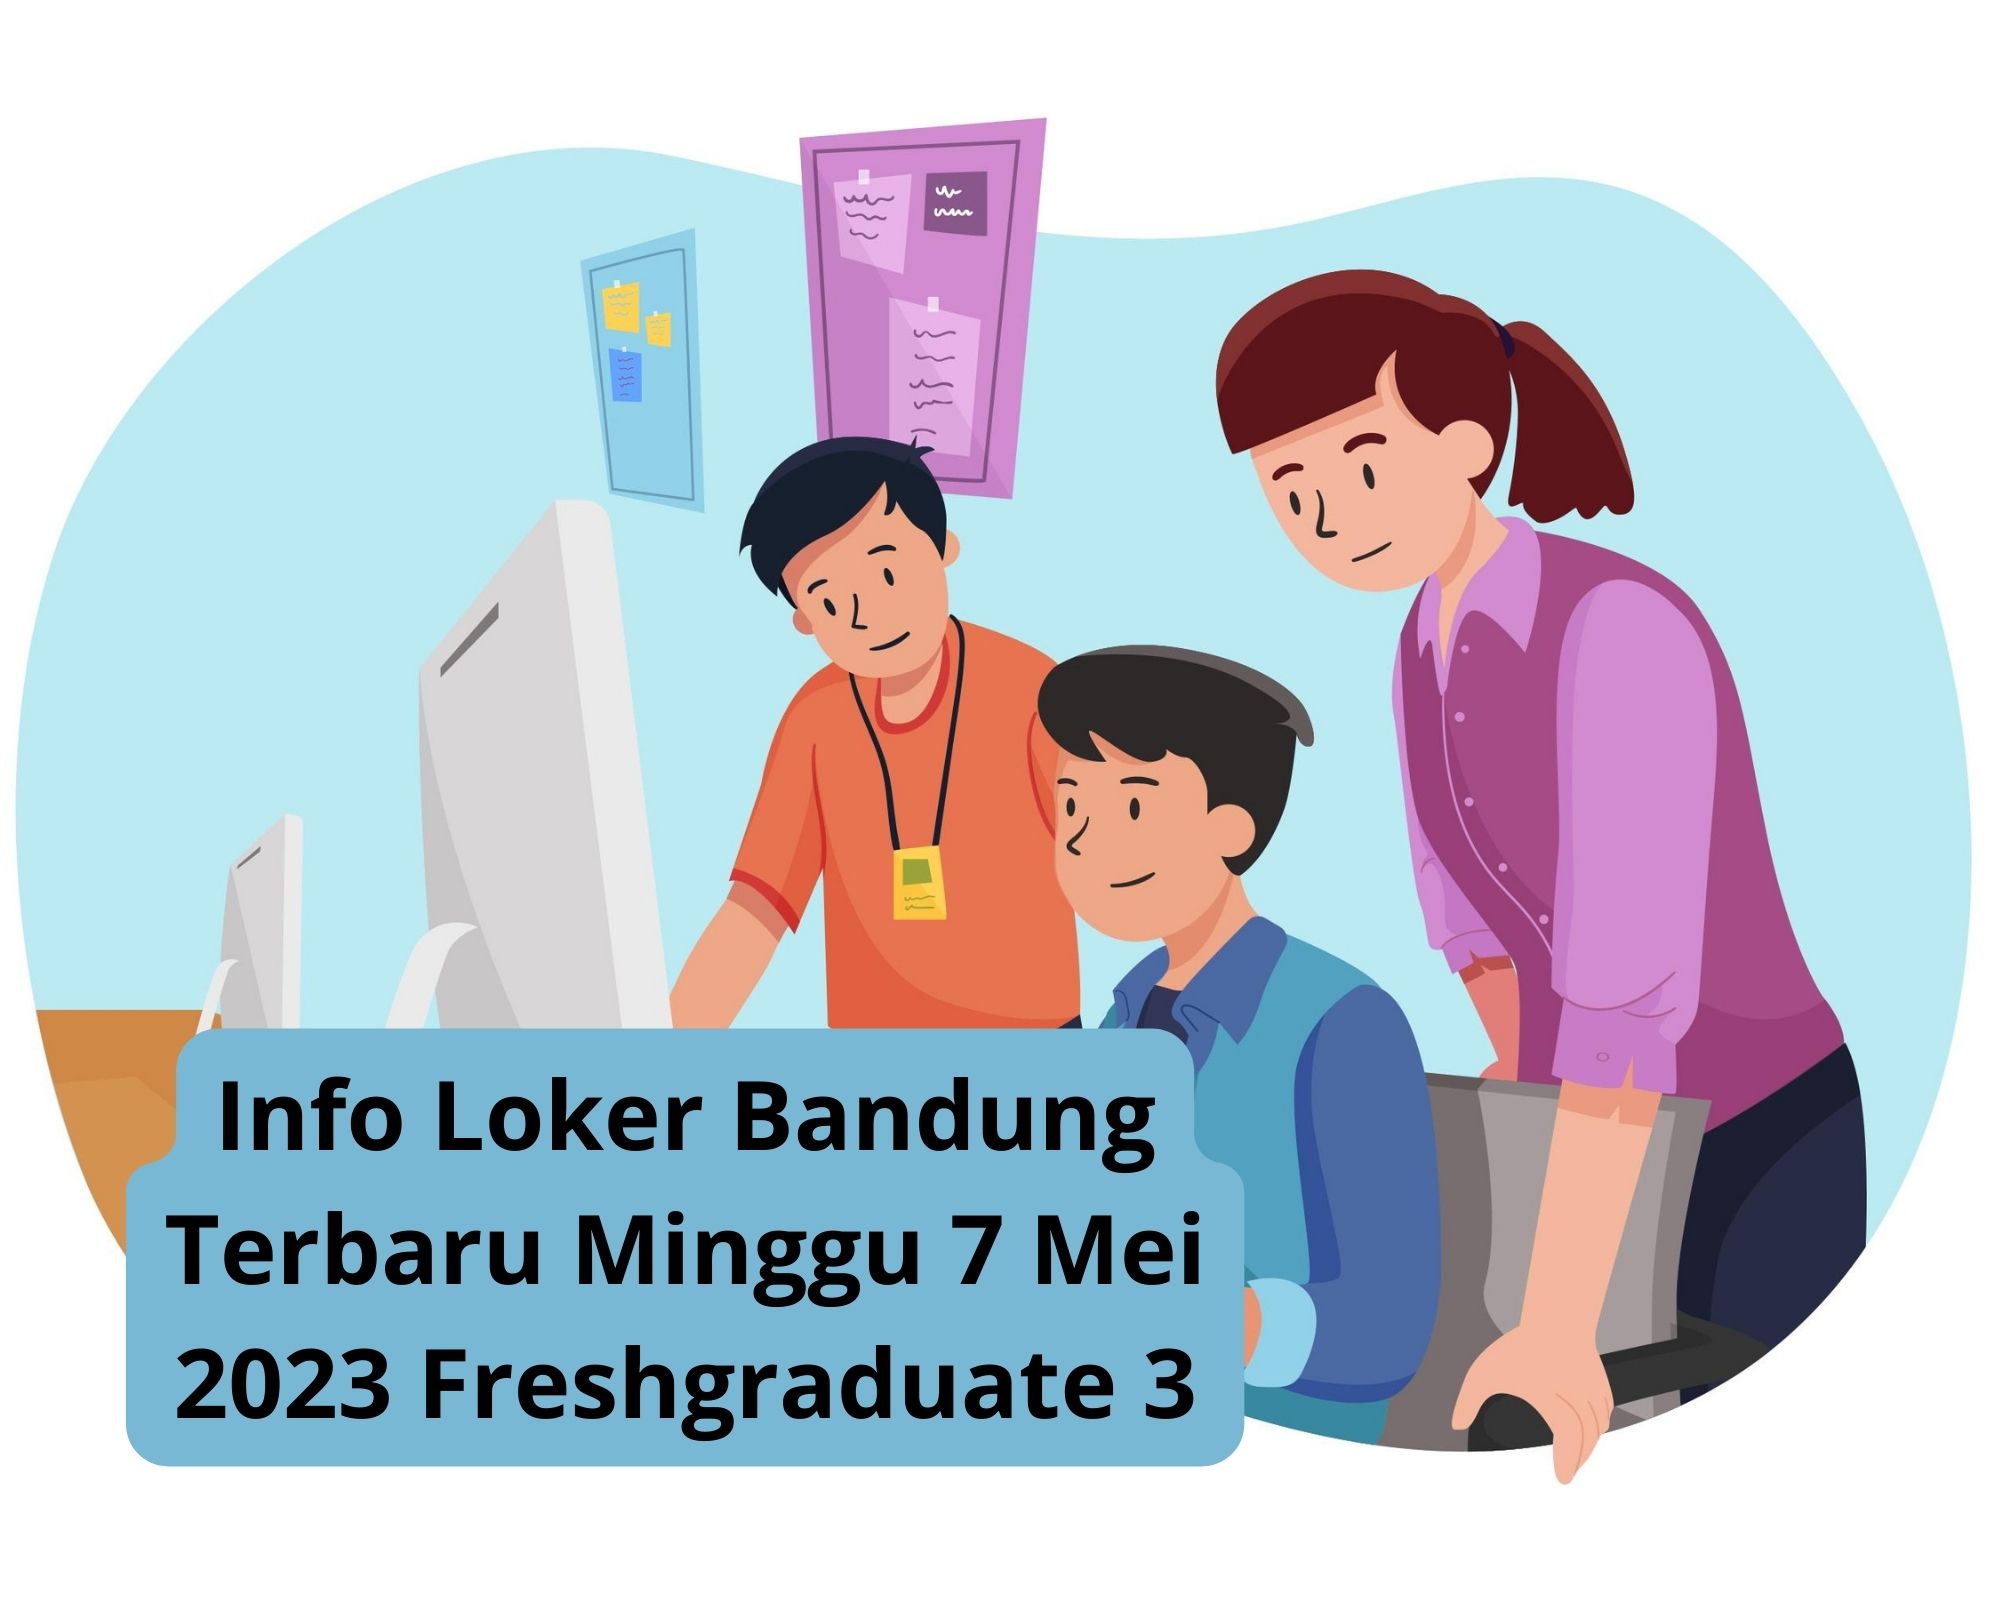 Info Loker Bandung Terbaru Minggu 7 Mei 2023 Freshgraduate 3